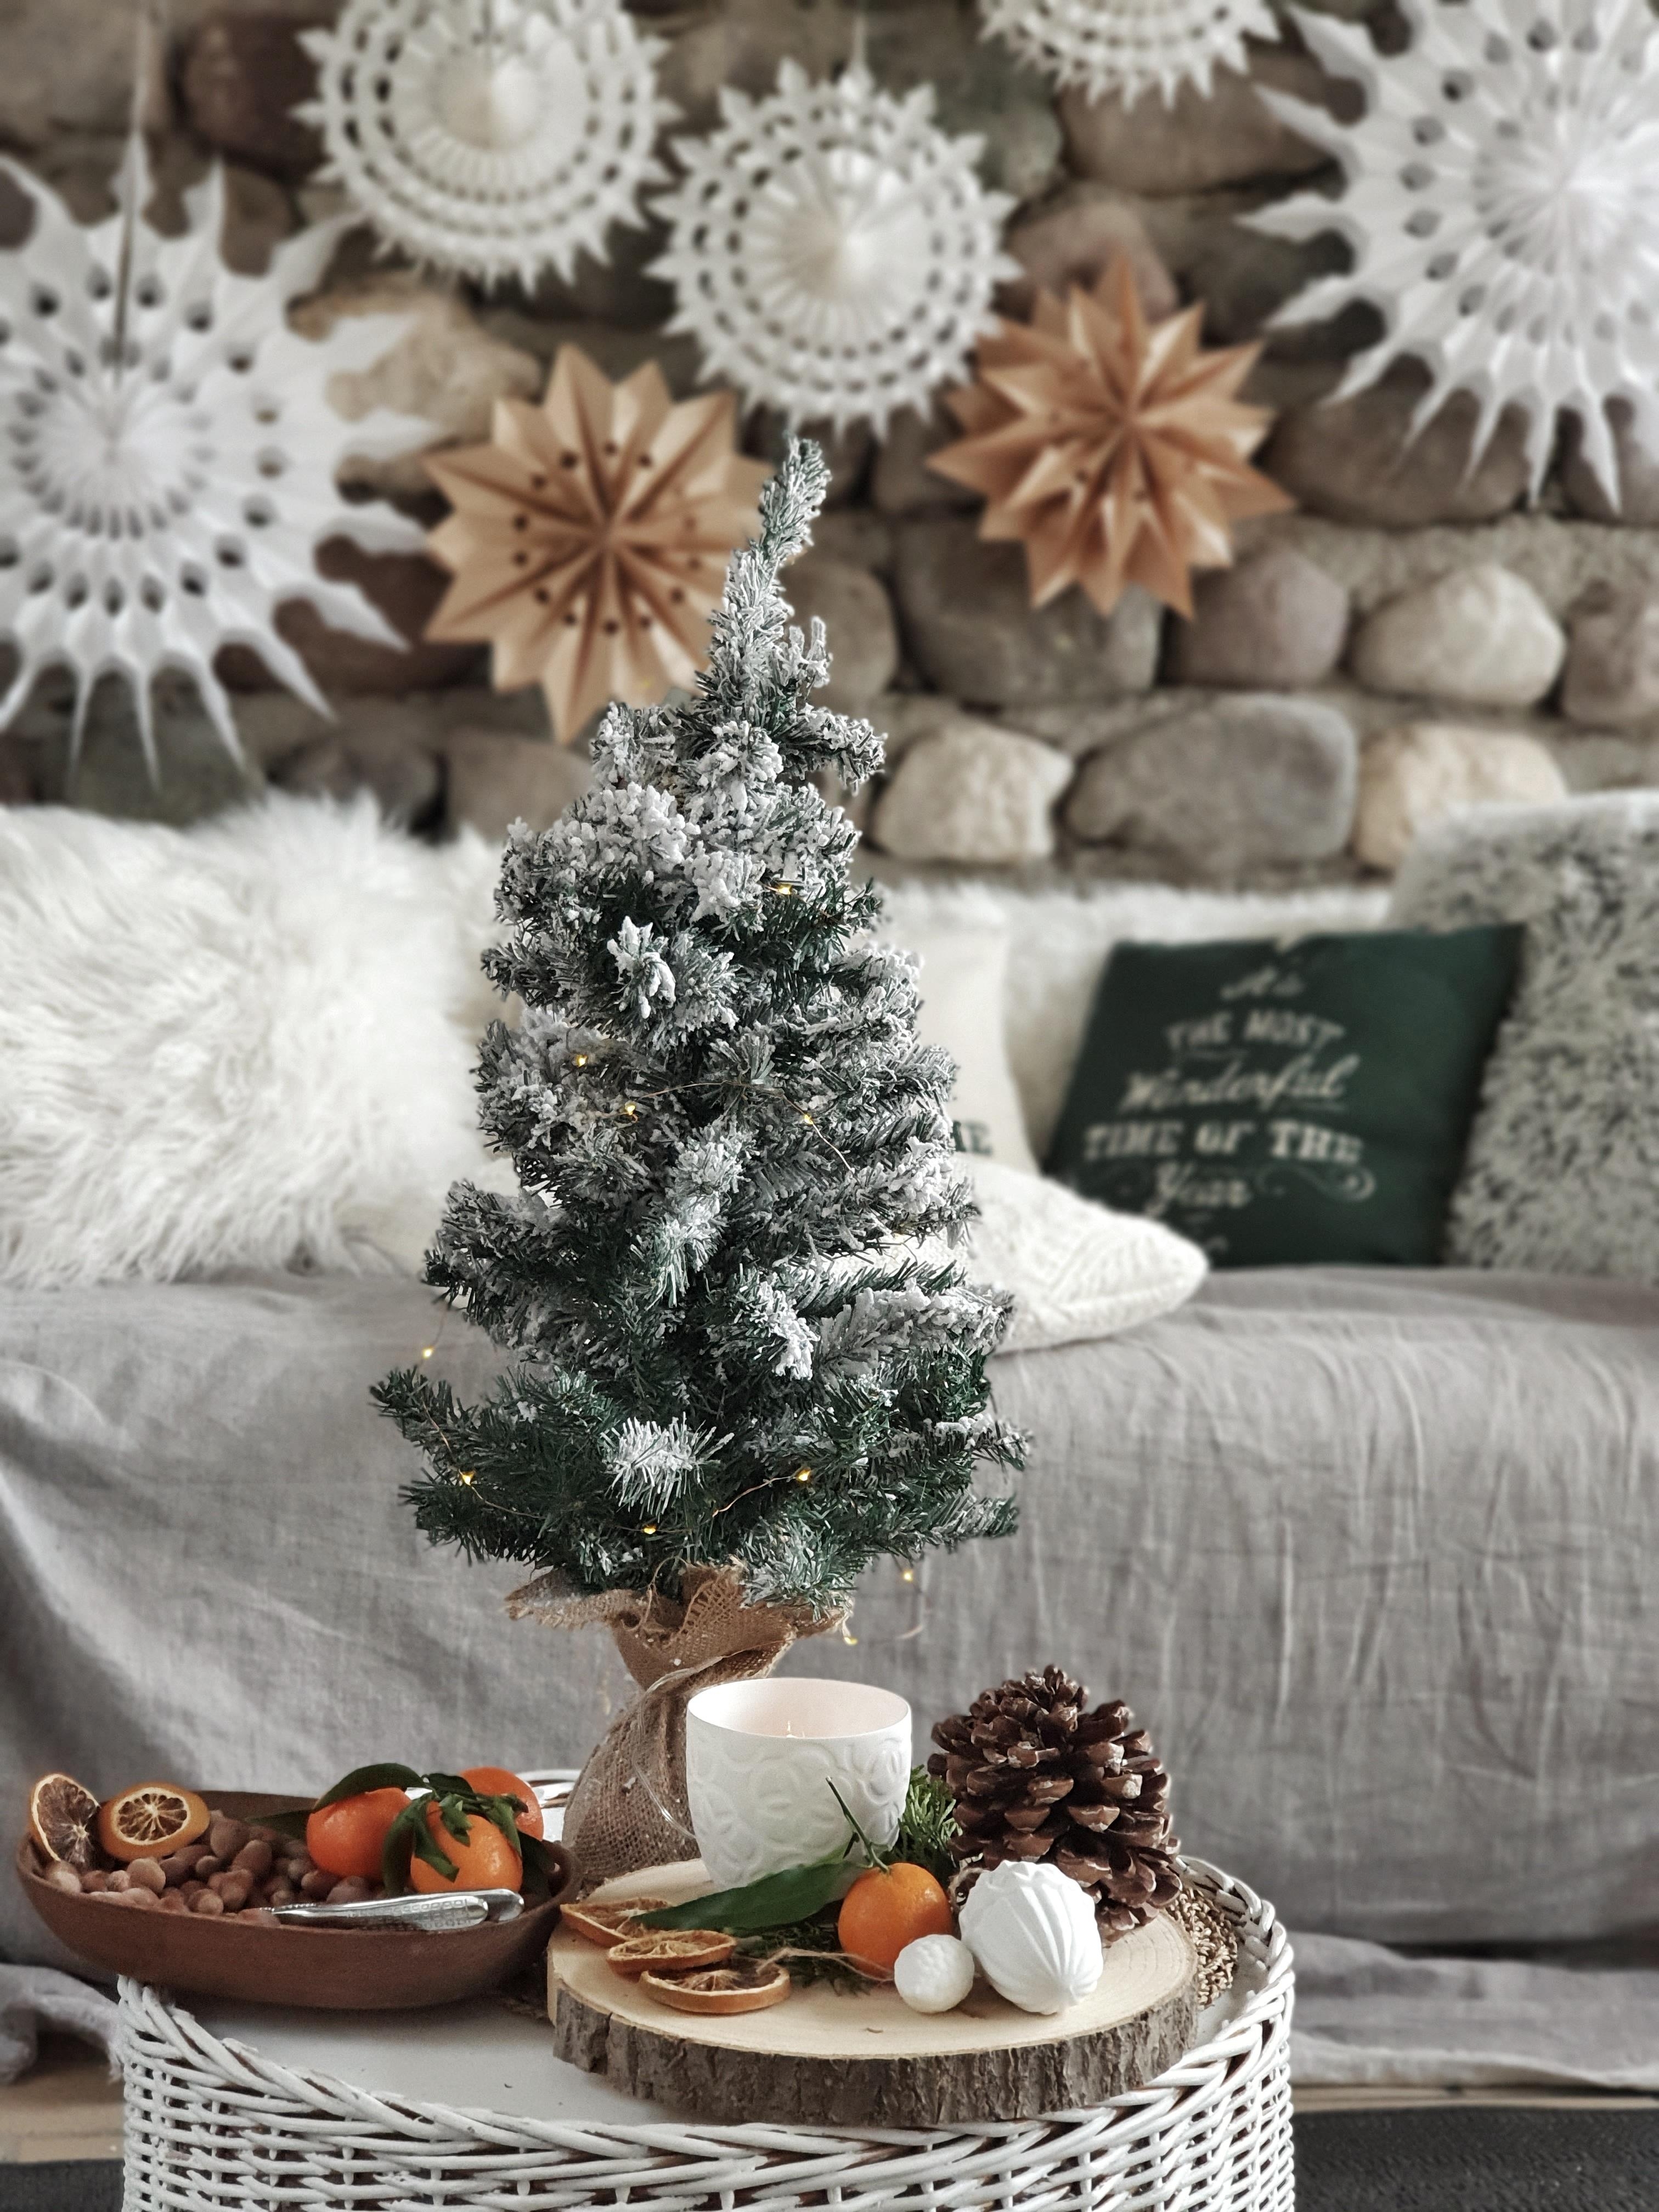 #couchliebt #weihnachten #hygge #christmas #weihnachtsdeko #weihnachtsbaum #cozy #christmastree #papiersterne